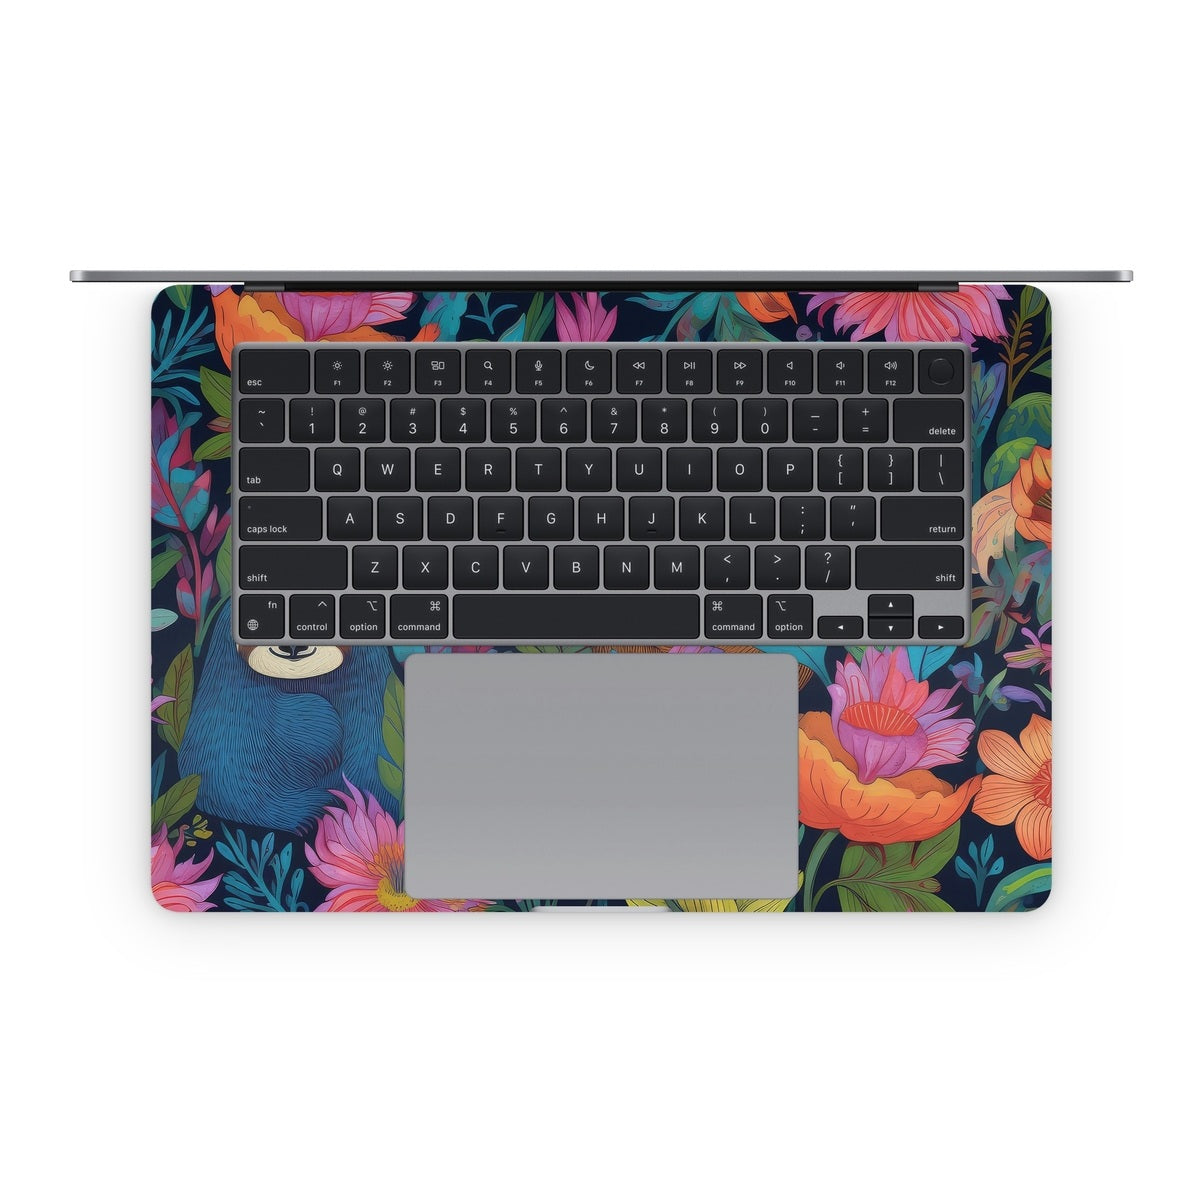 Garden of Slothy Delights - Apple MacBook Skin